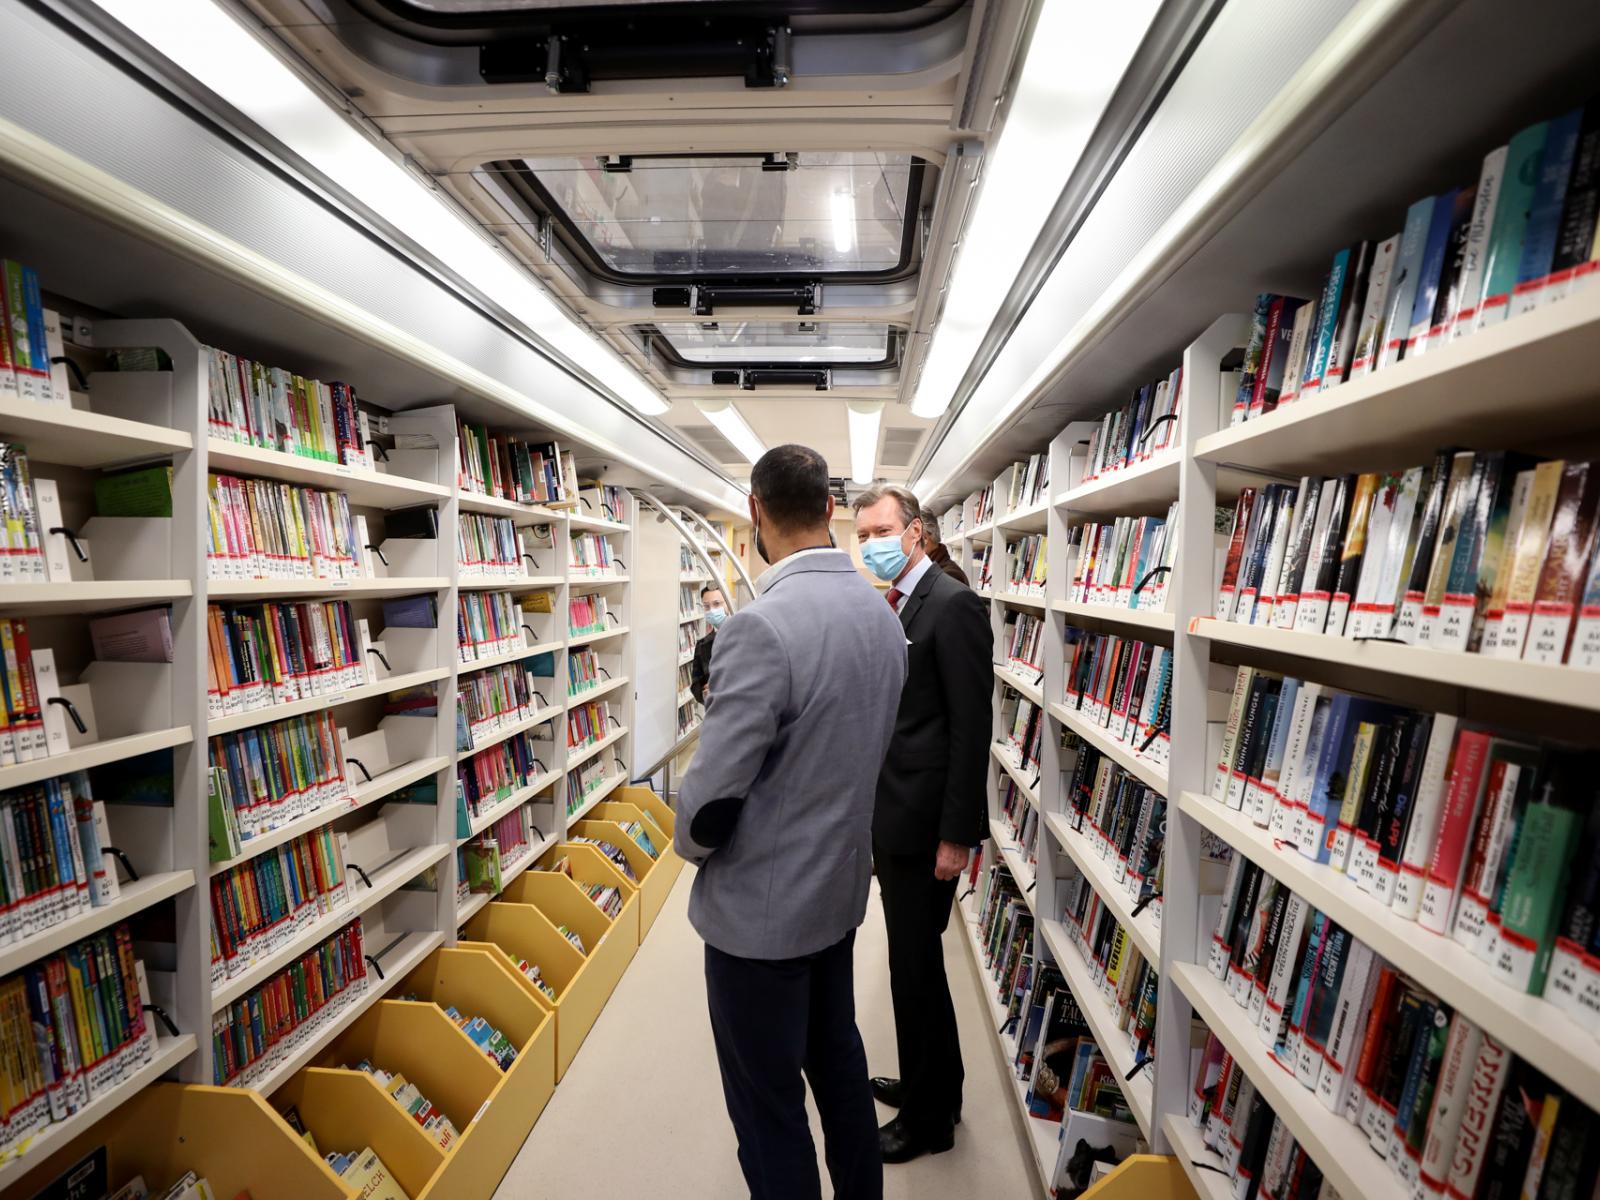 Le Grand-Duc visite la bibliothèque nationale du Luxembourg